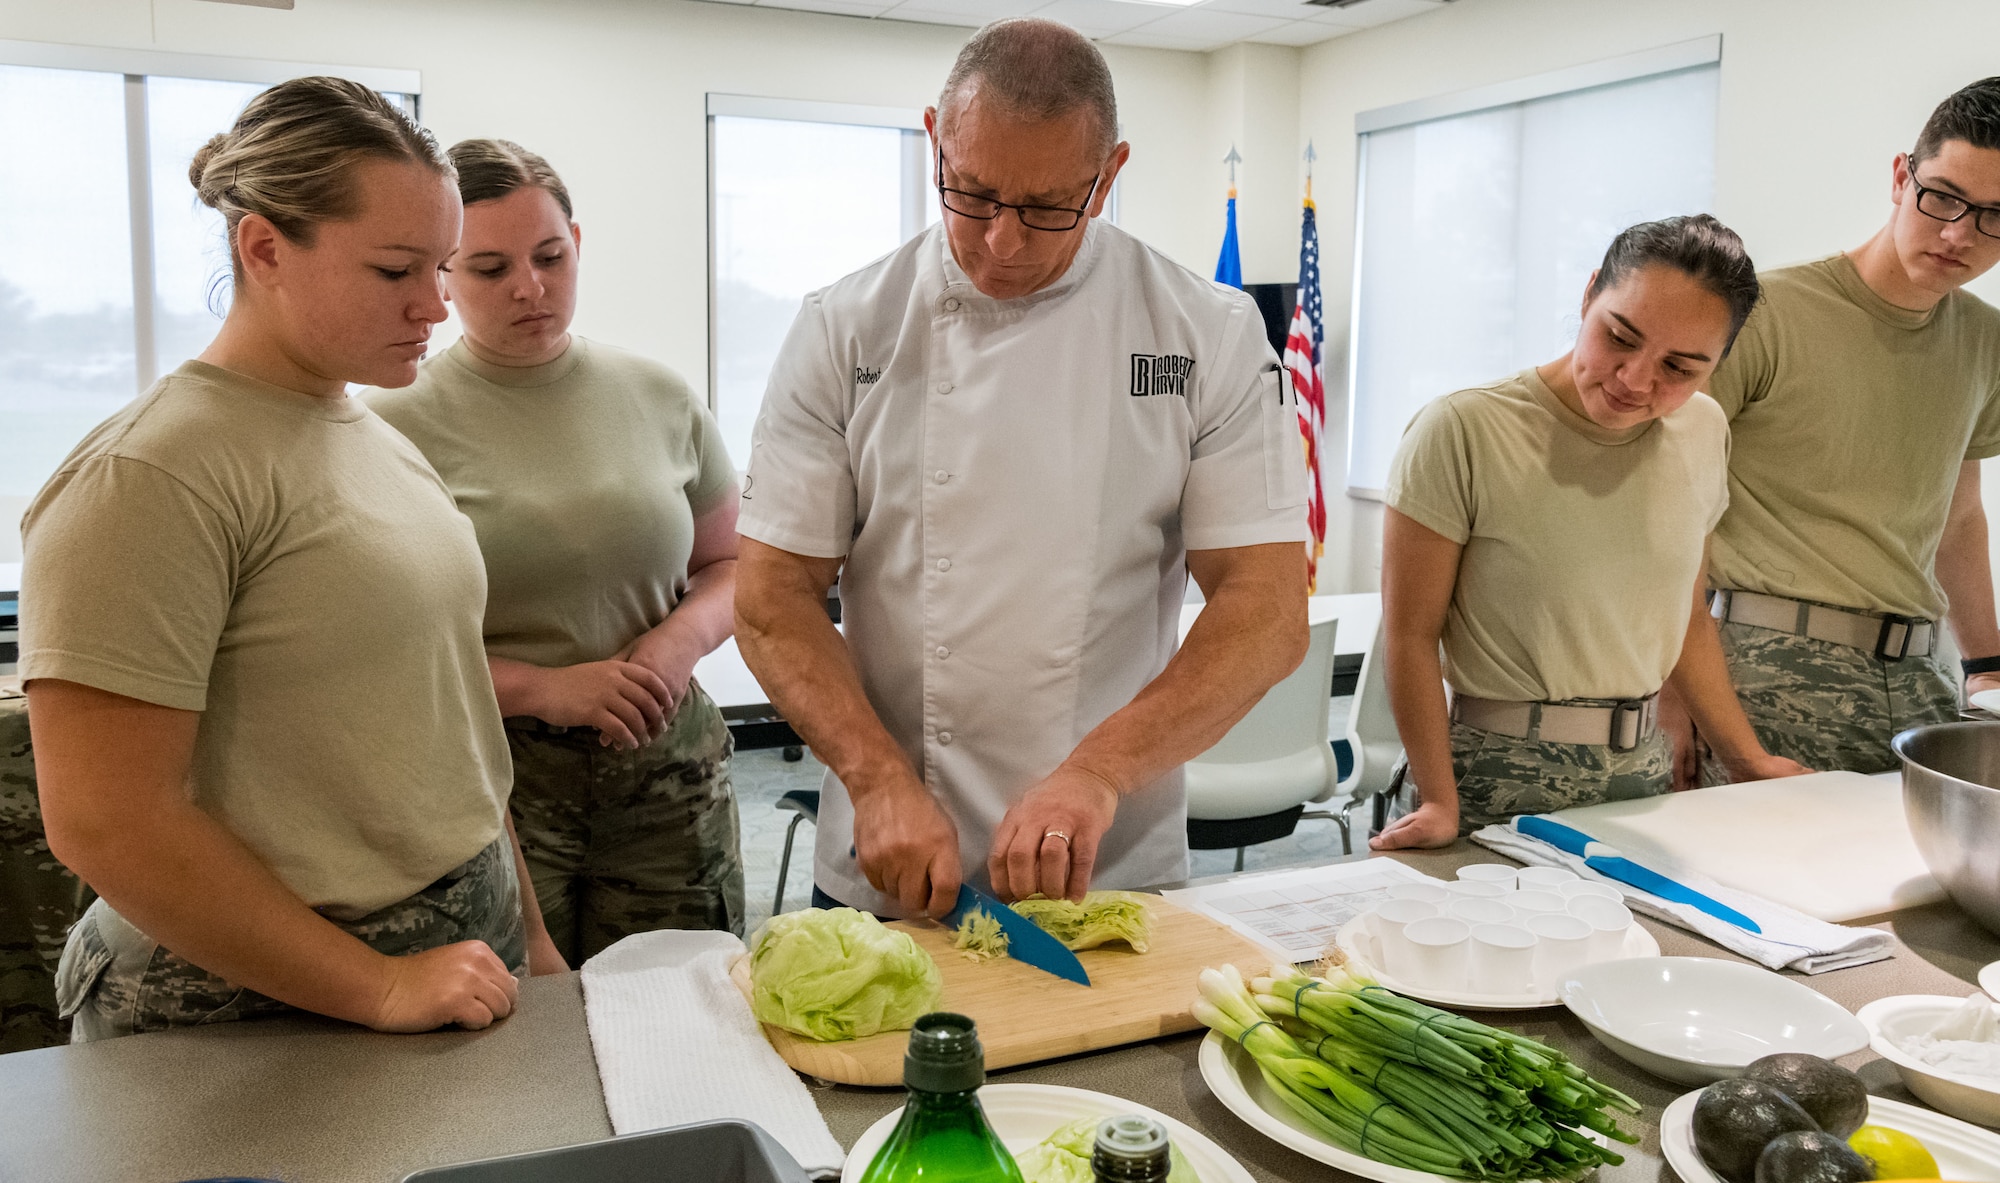 Robert Irvine demonstrates how to shred lettuce to Airmen